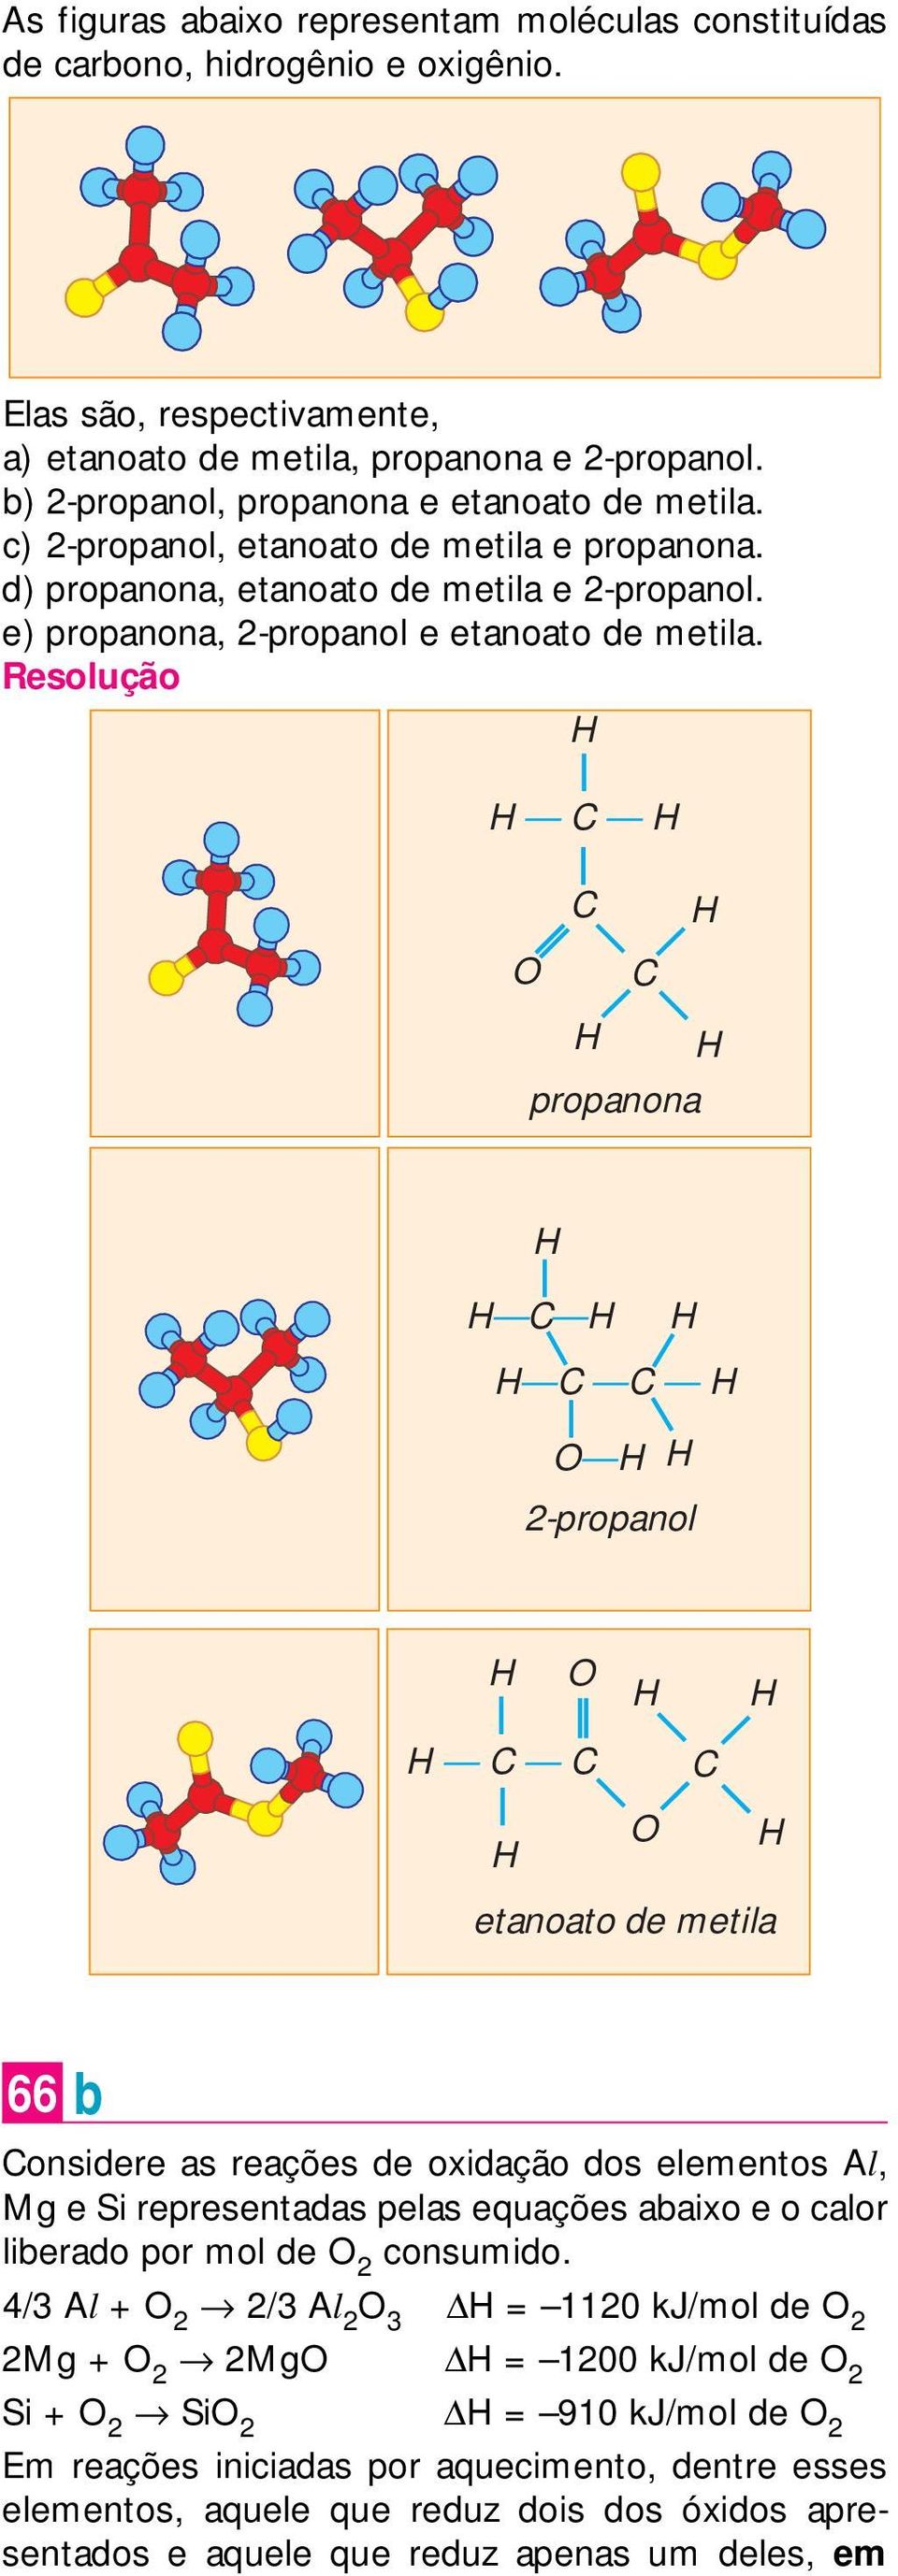 = propanona 2-propanol = etanoato de metila 66 b onsidere as reações de oxidação dos elementos l, Mg e Si representadas pelas equações abaixo e o calor liberado por mol de 2 consumido.